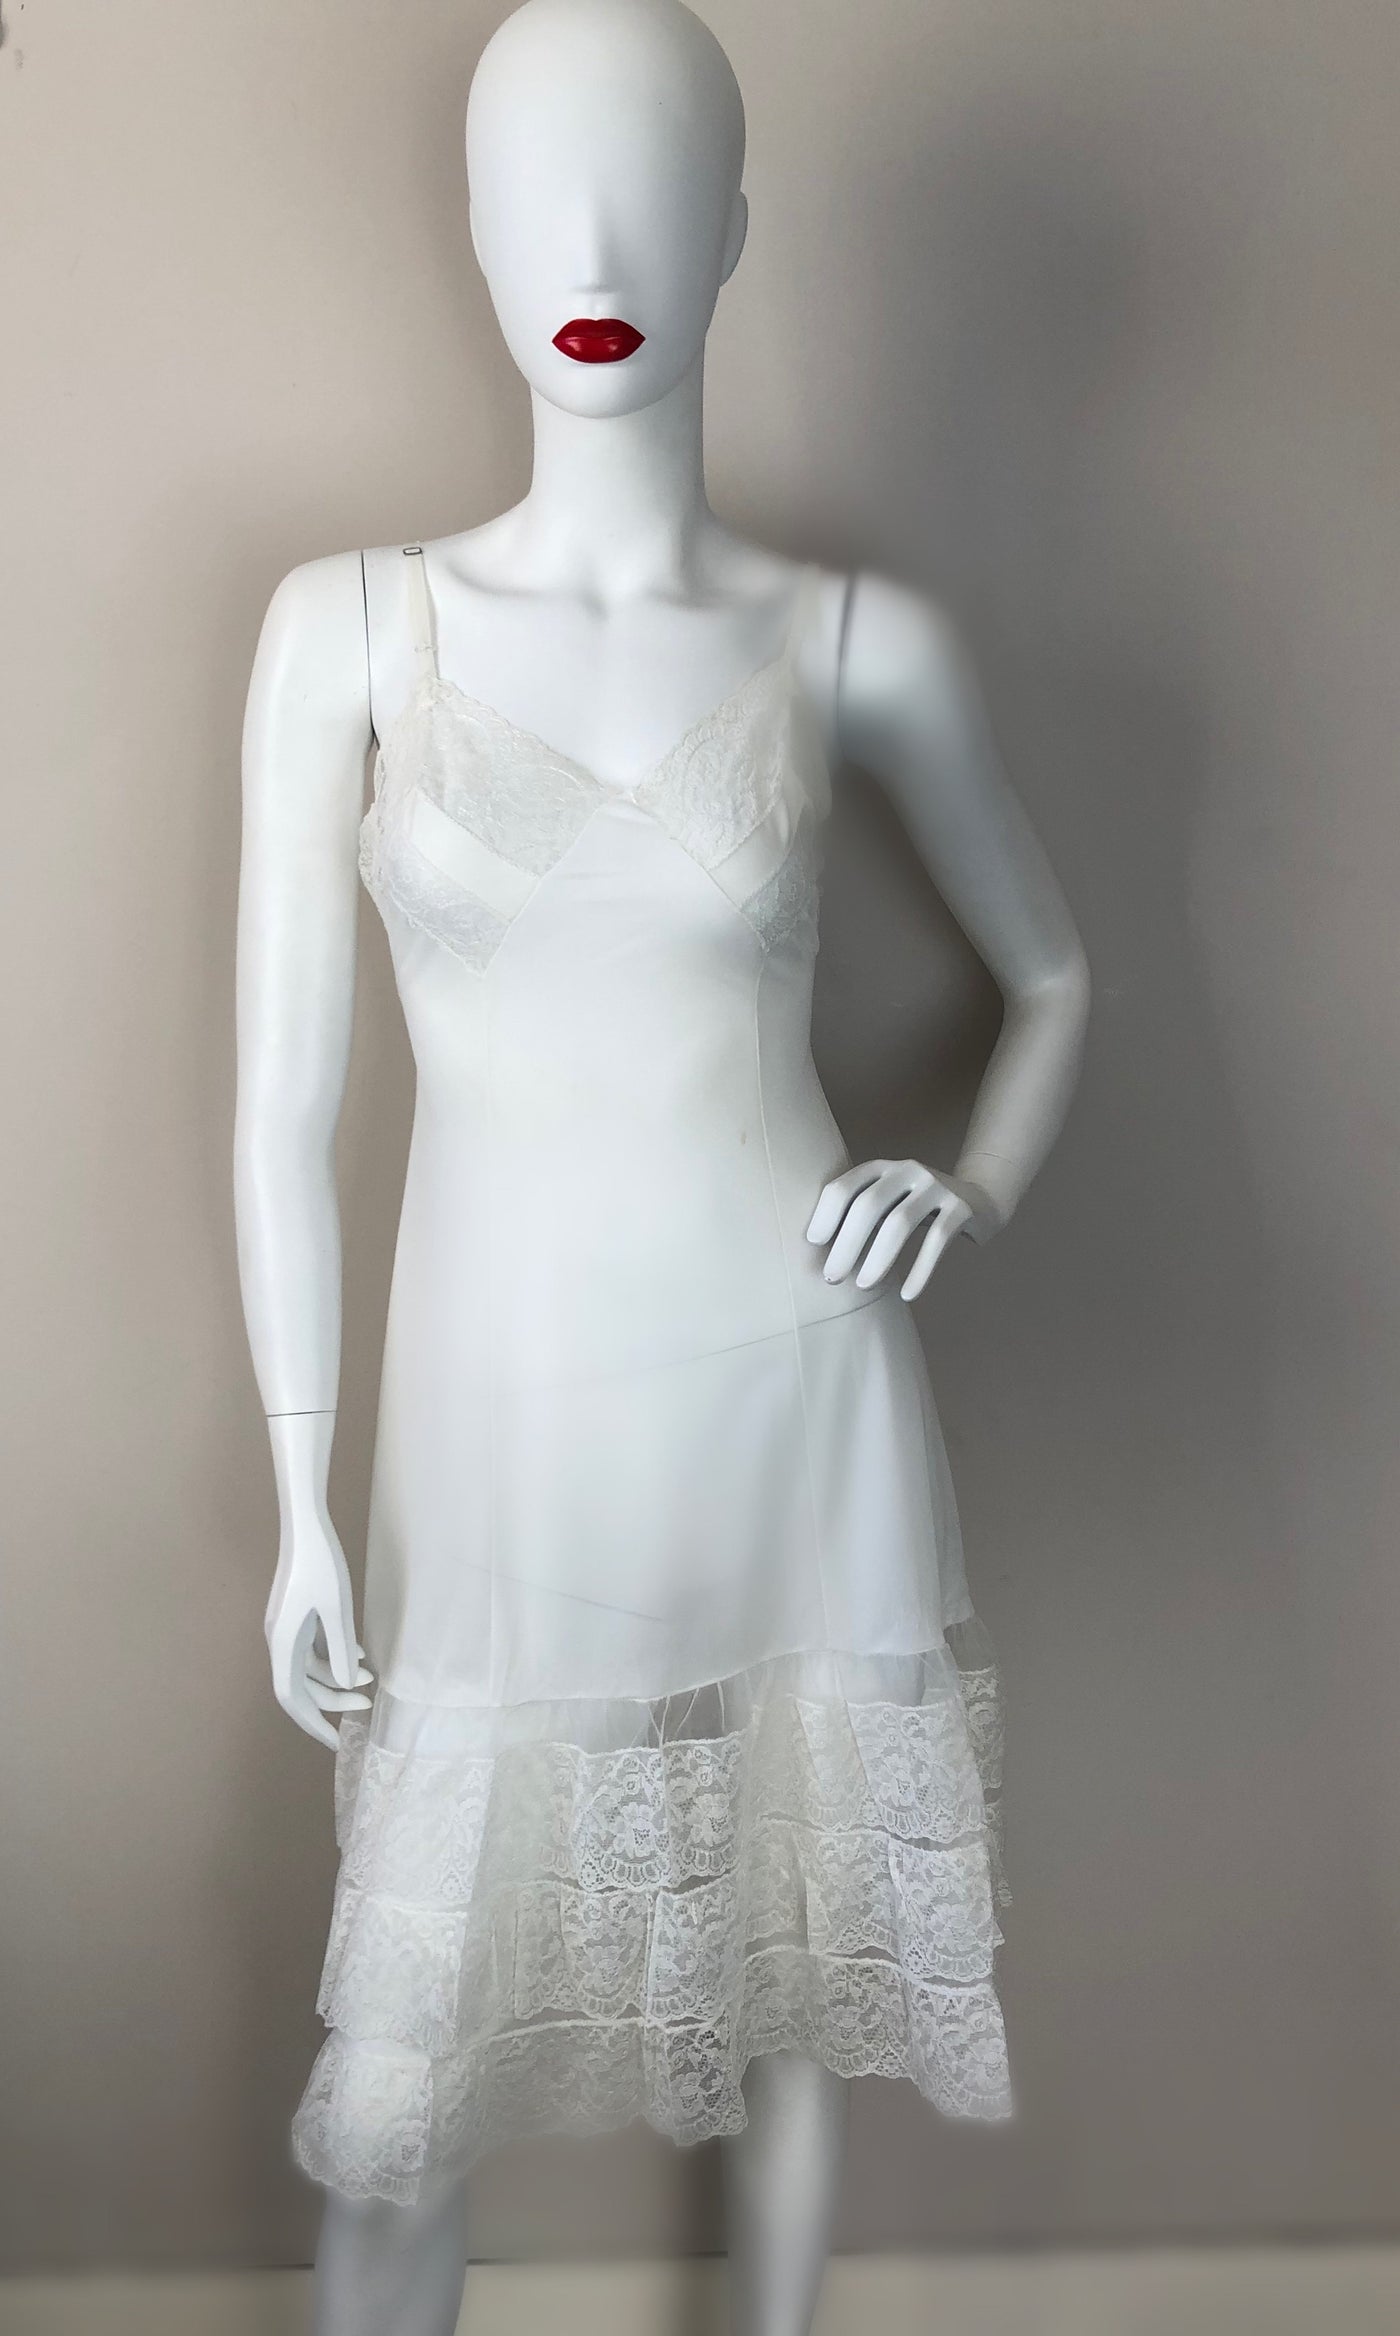 White slip dress